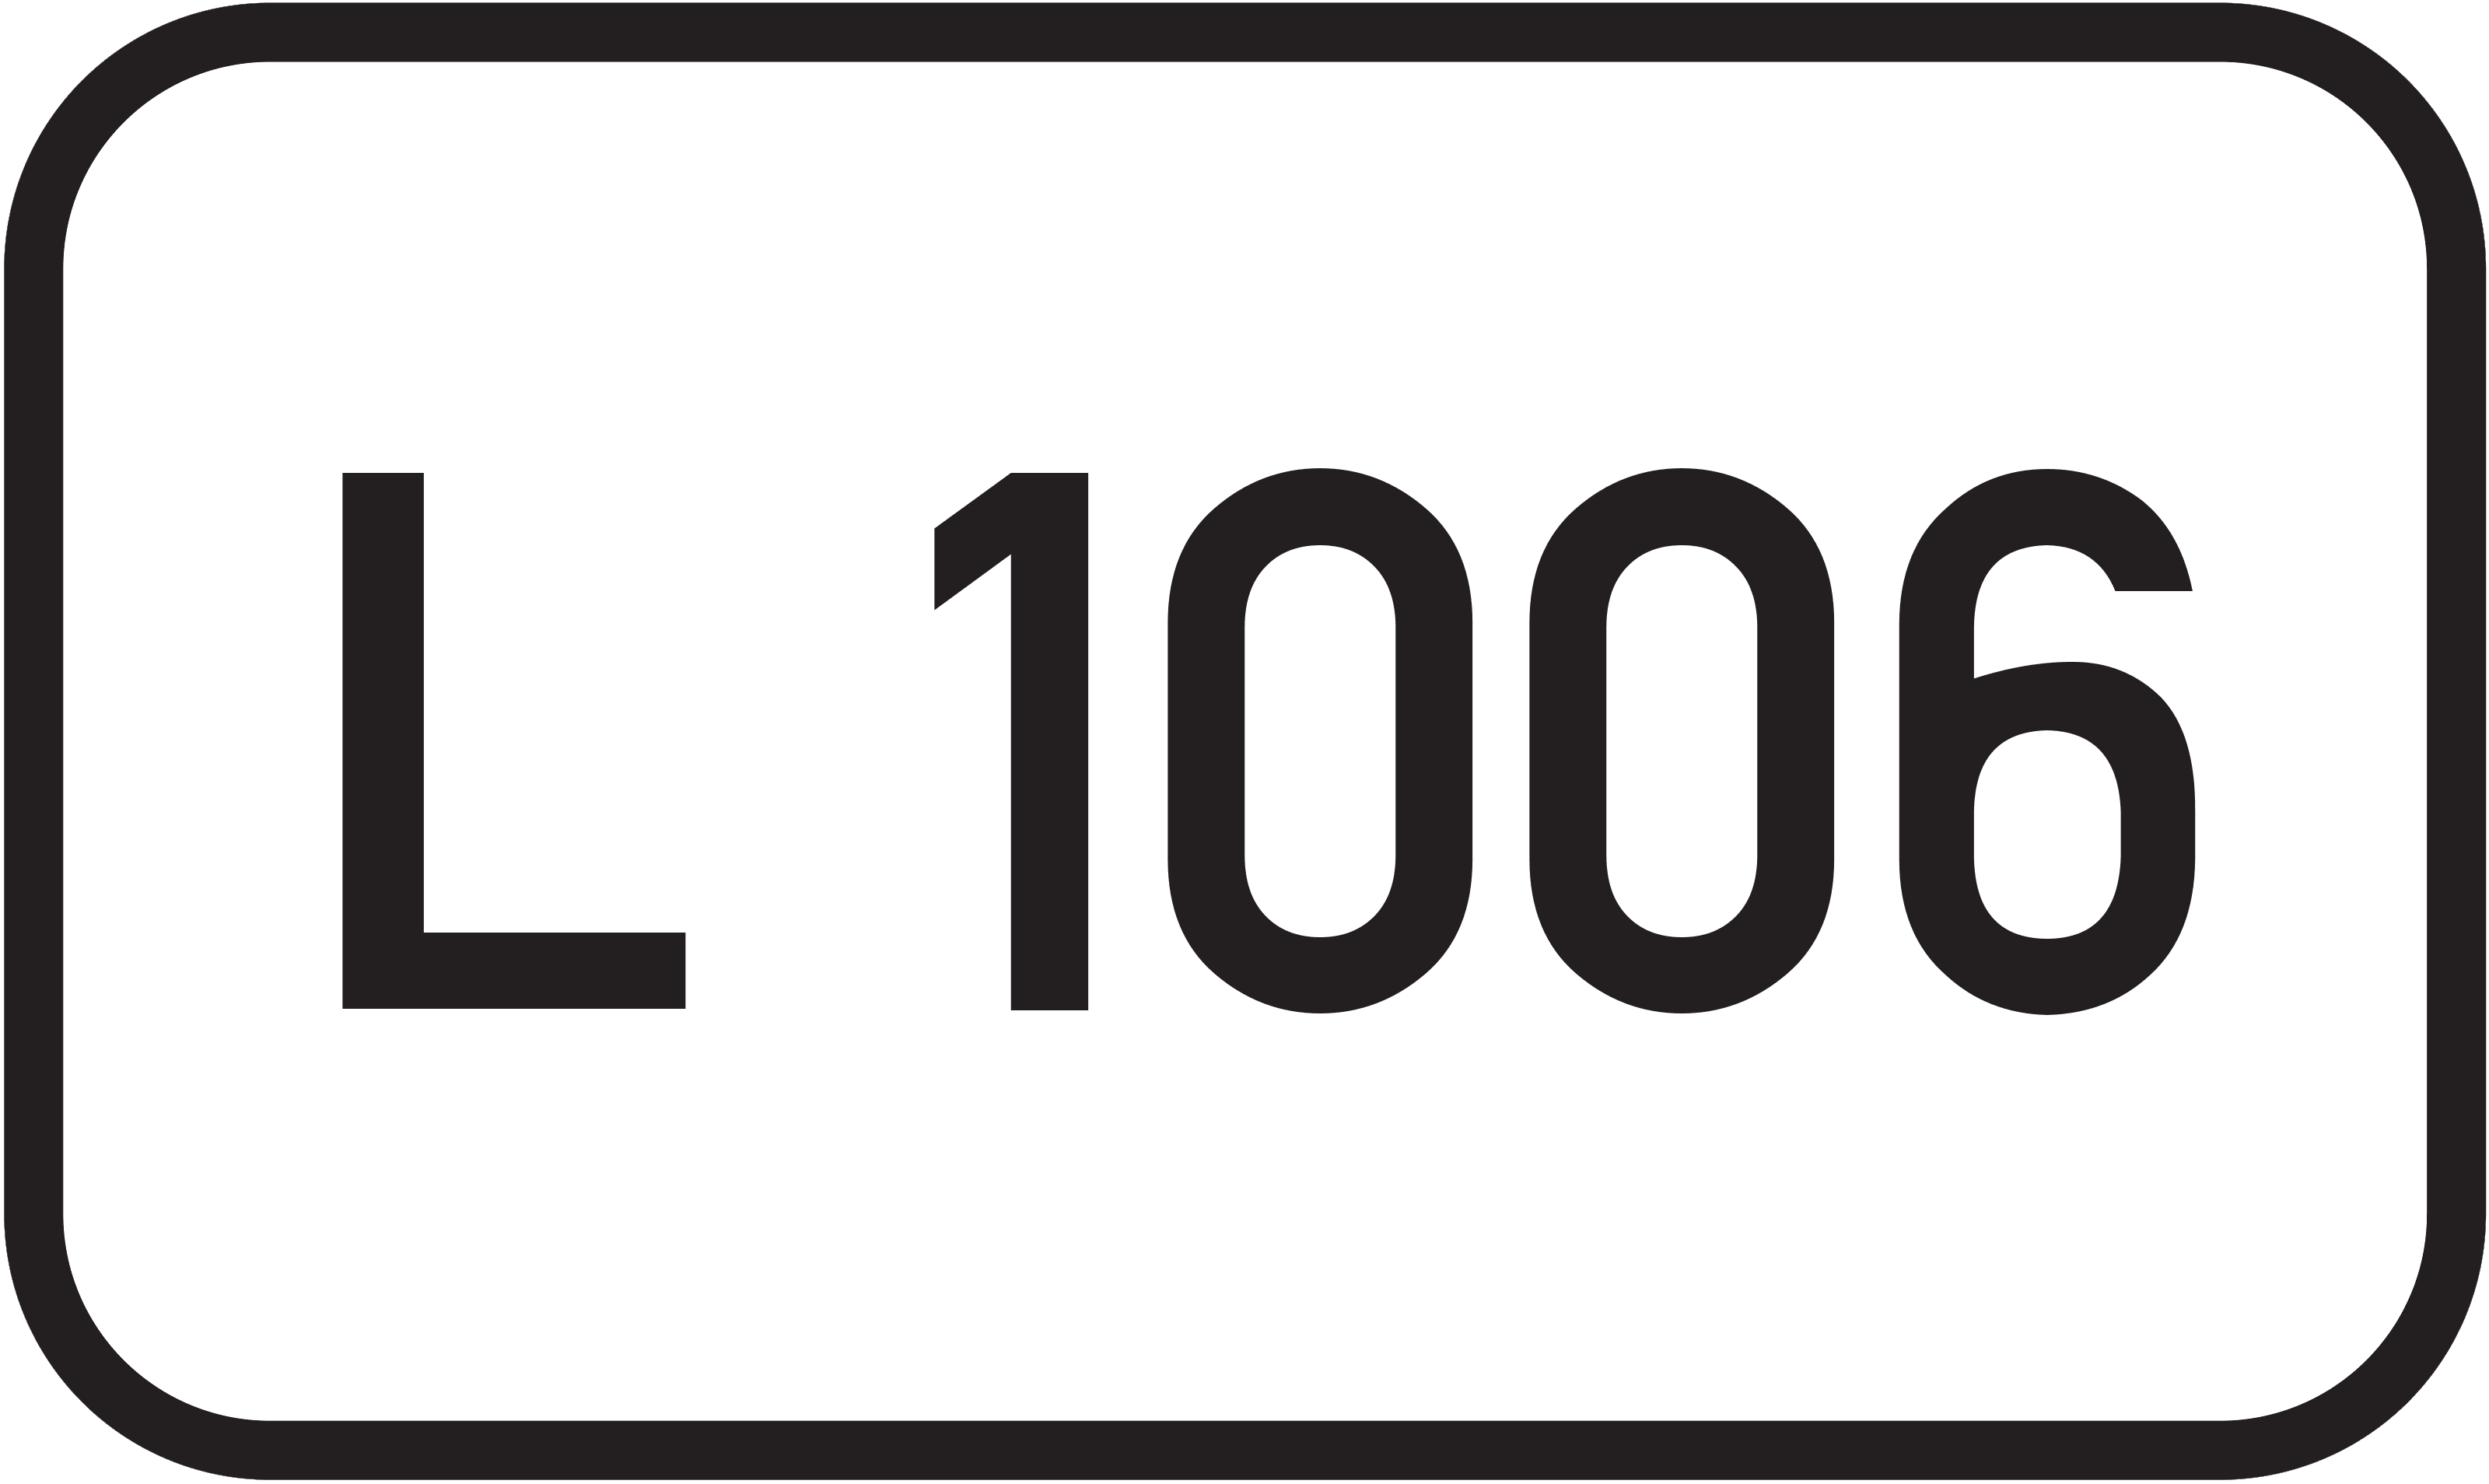 Landesstraße L 1006